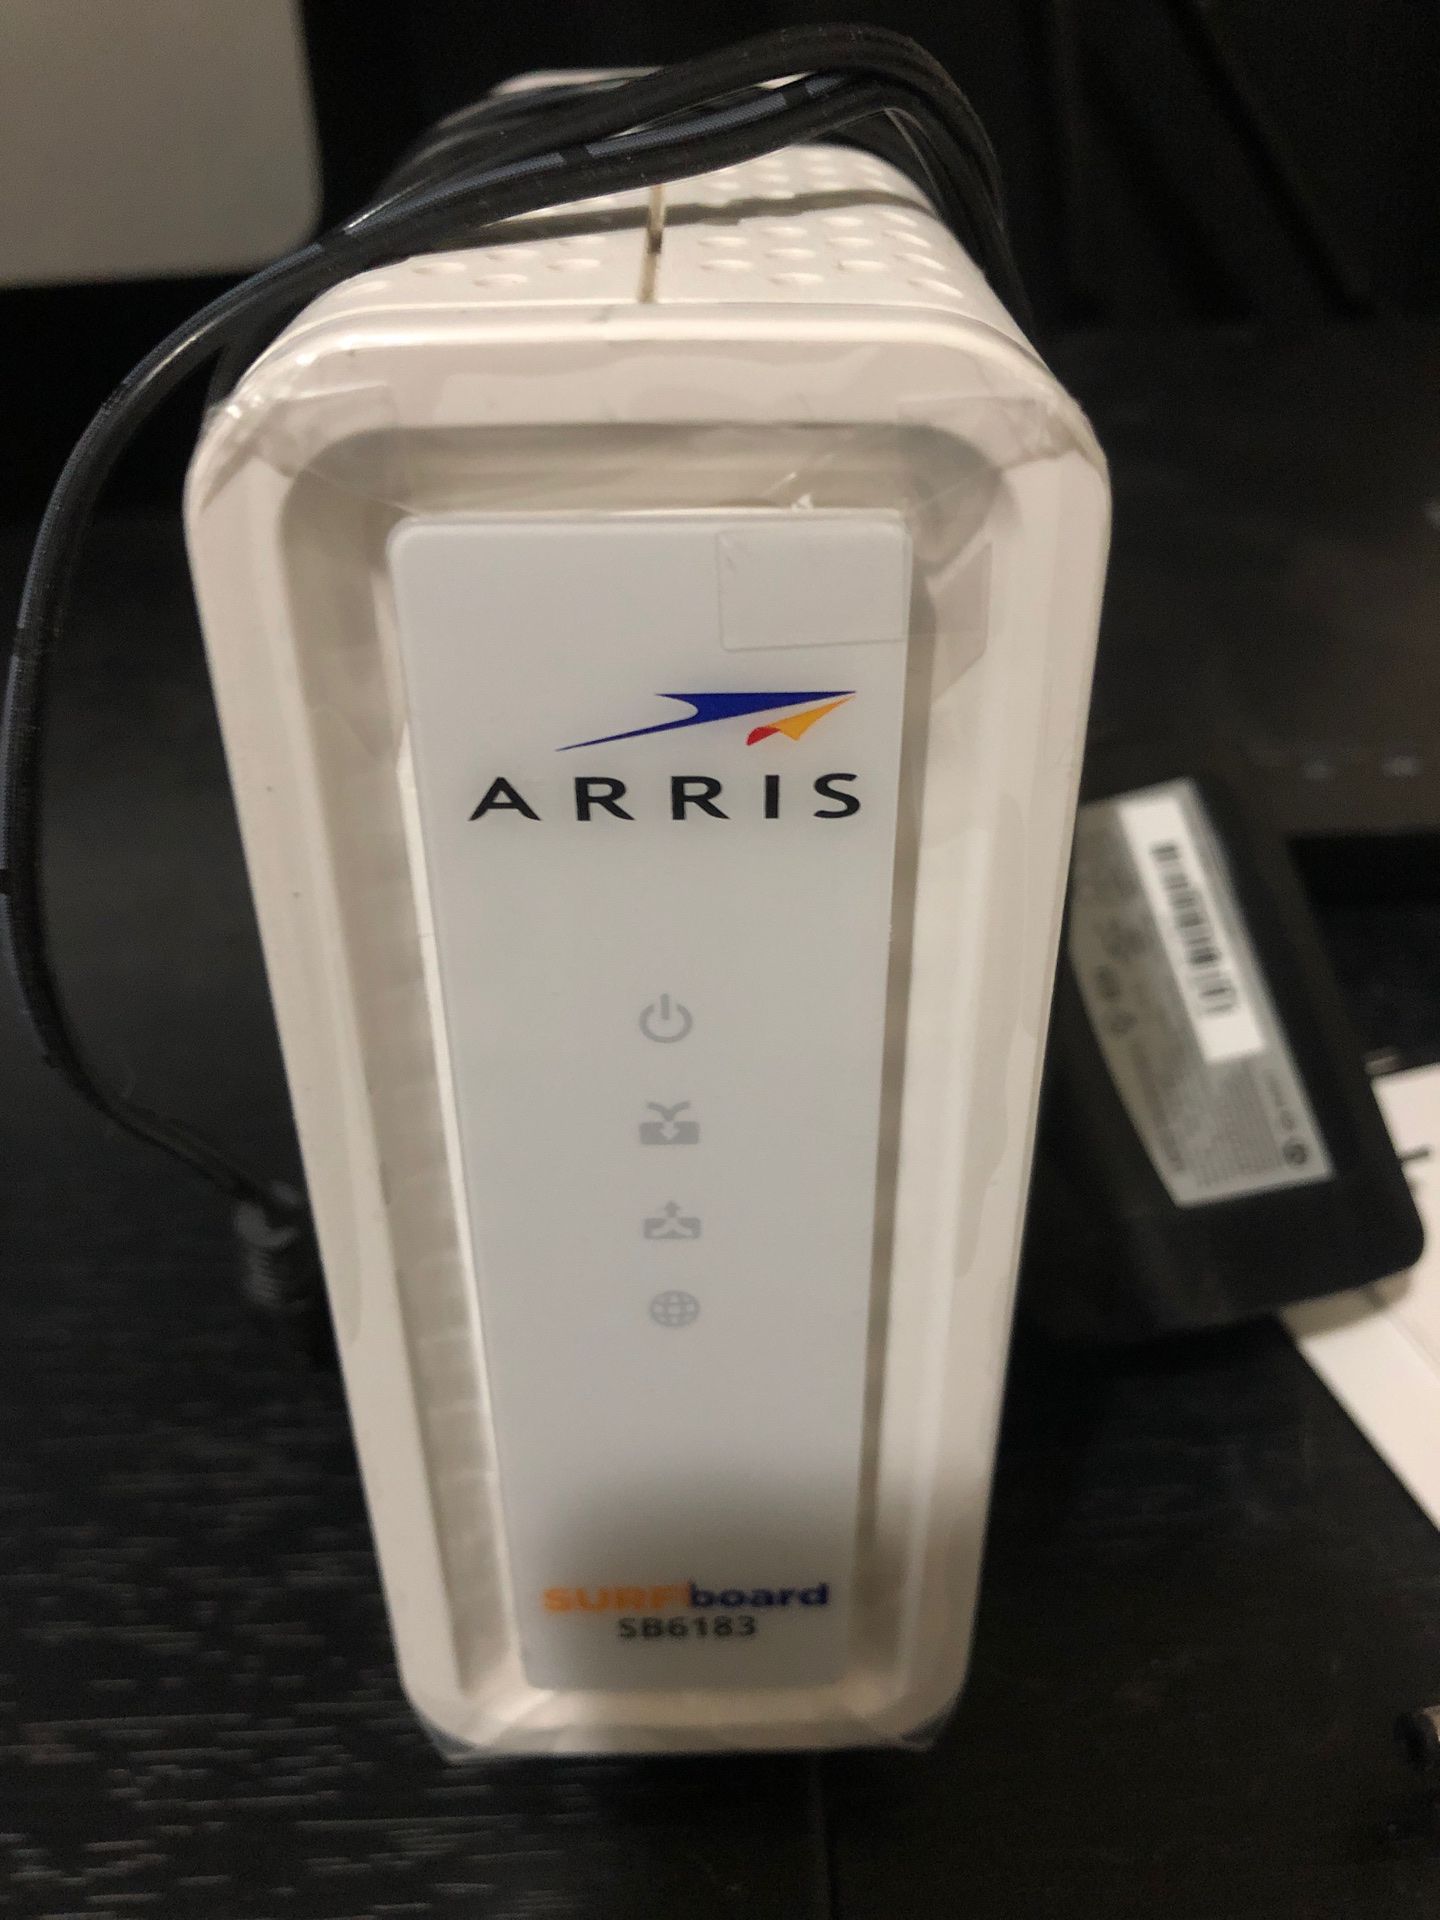 Arris sb6183 cable modem